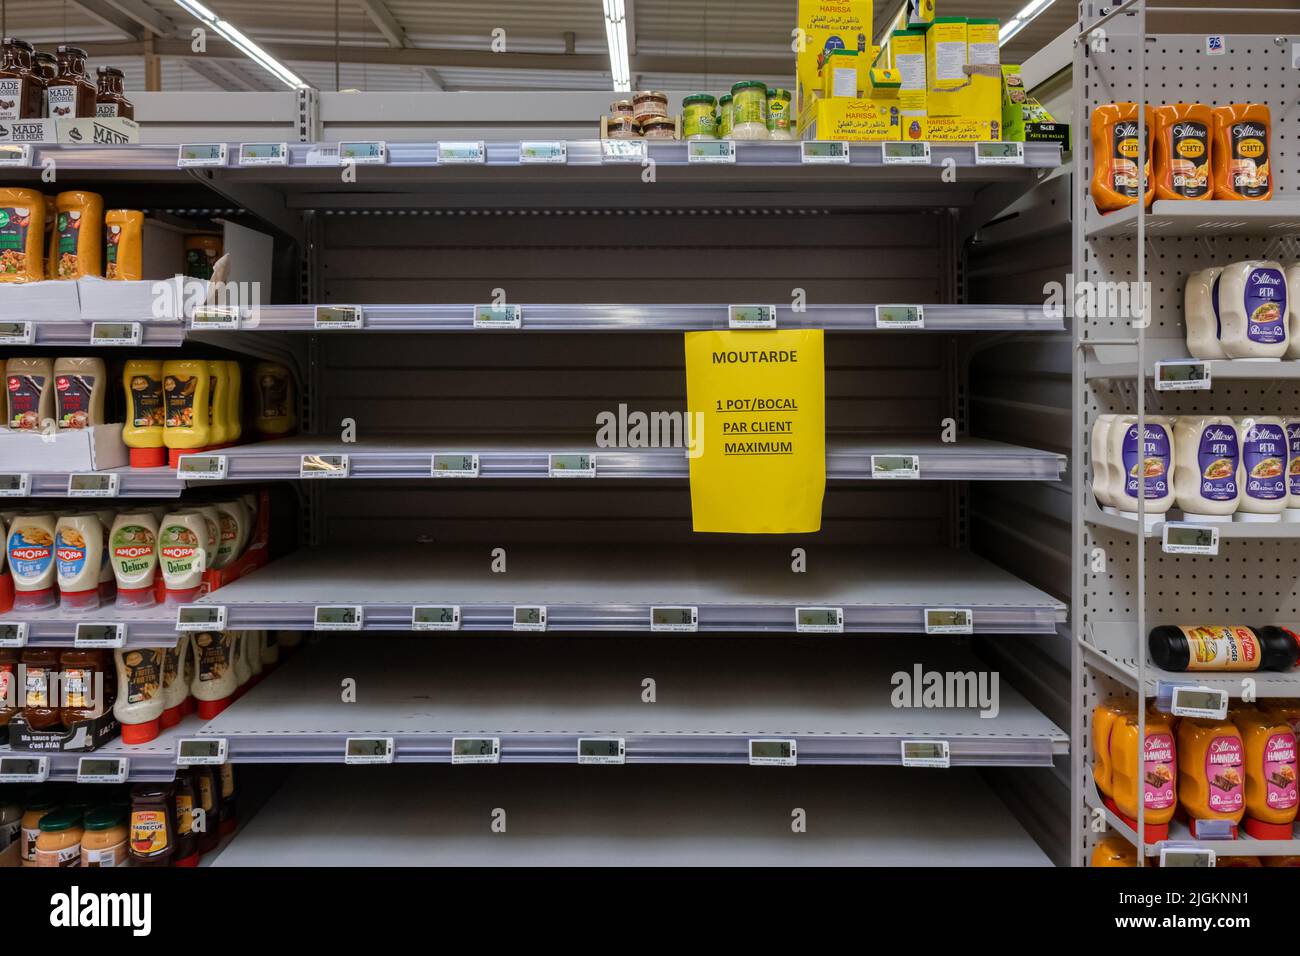 Ardres, Francia - 26 giugno 2022: Scaffali vuoti in un supermercato francese. I mostarde sono in corto approvvigionamento. Il segno dice "un solo vaso per cliente" Foto Stock